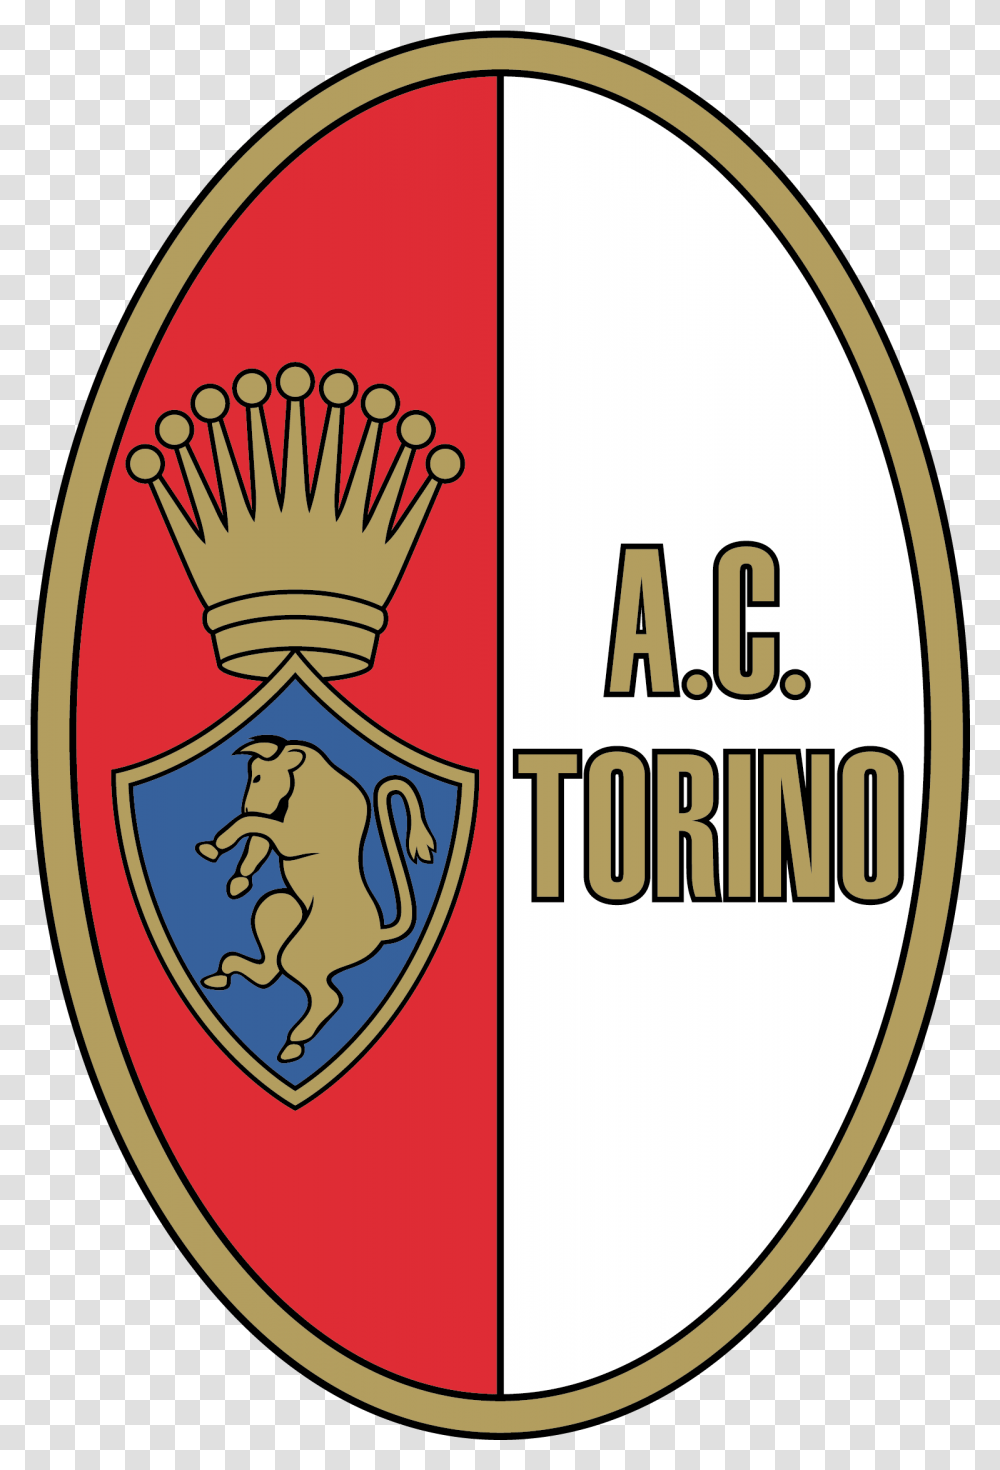 Ac Torino Of Italy Crest Ac Torino Logo, Armor, Shield Transparent Png